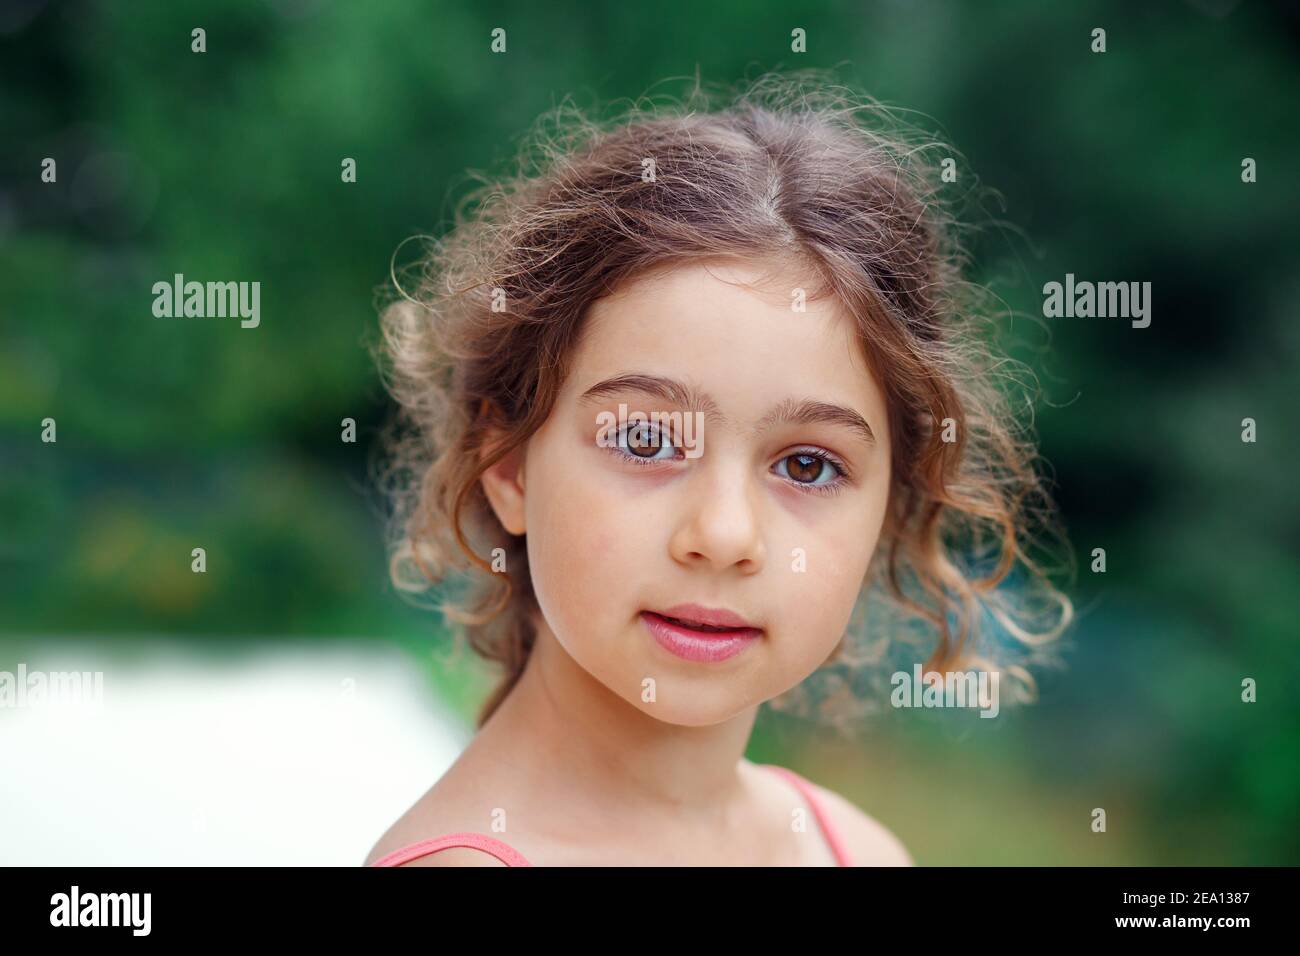 Portrait von lächelnd schöne kleine Mädchen im grünen Sommerpark. Glückliches Kind, das die Kamera anschaut Stockfoto